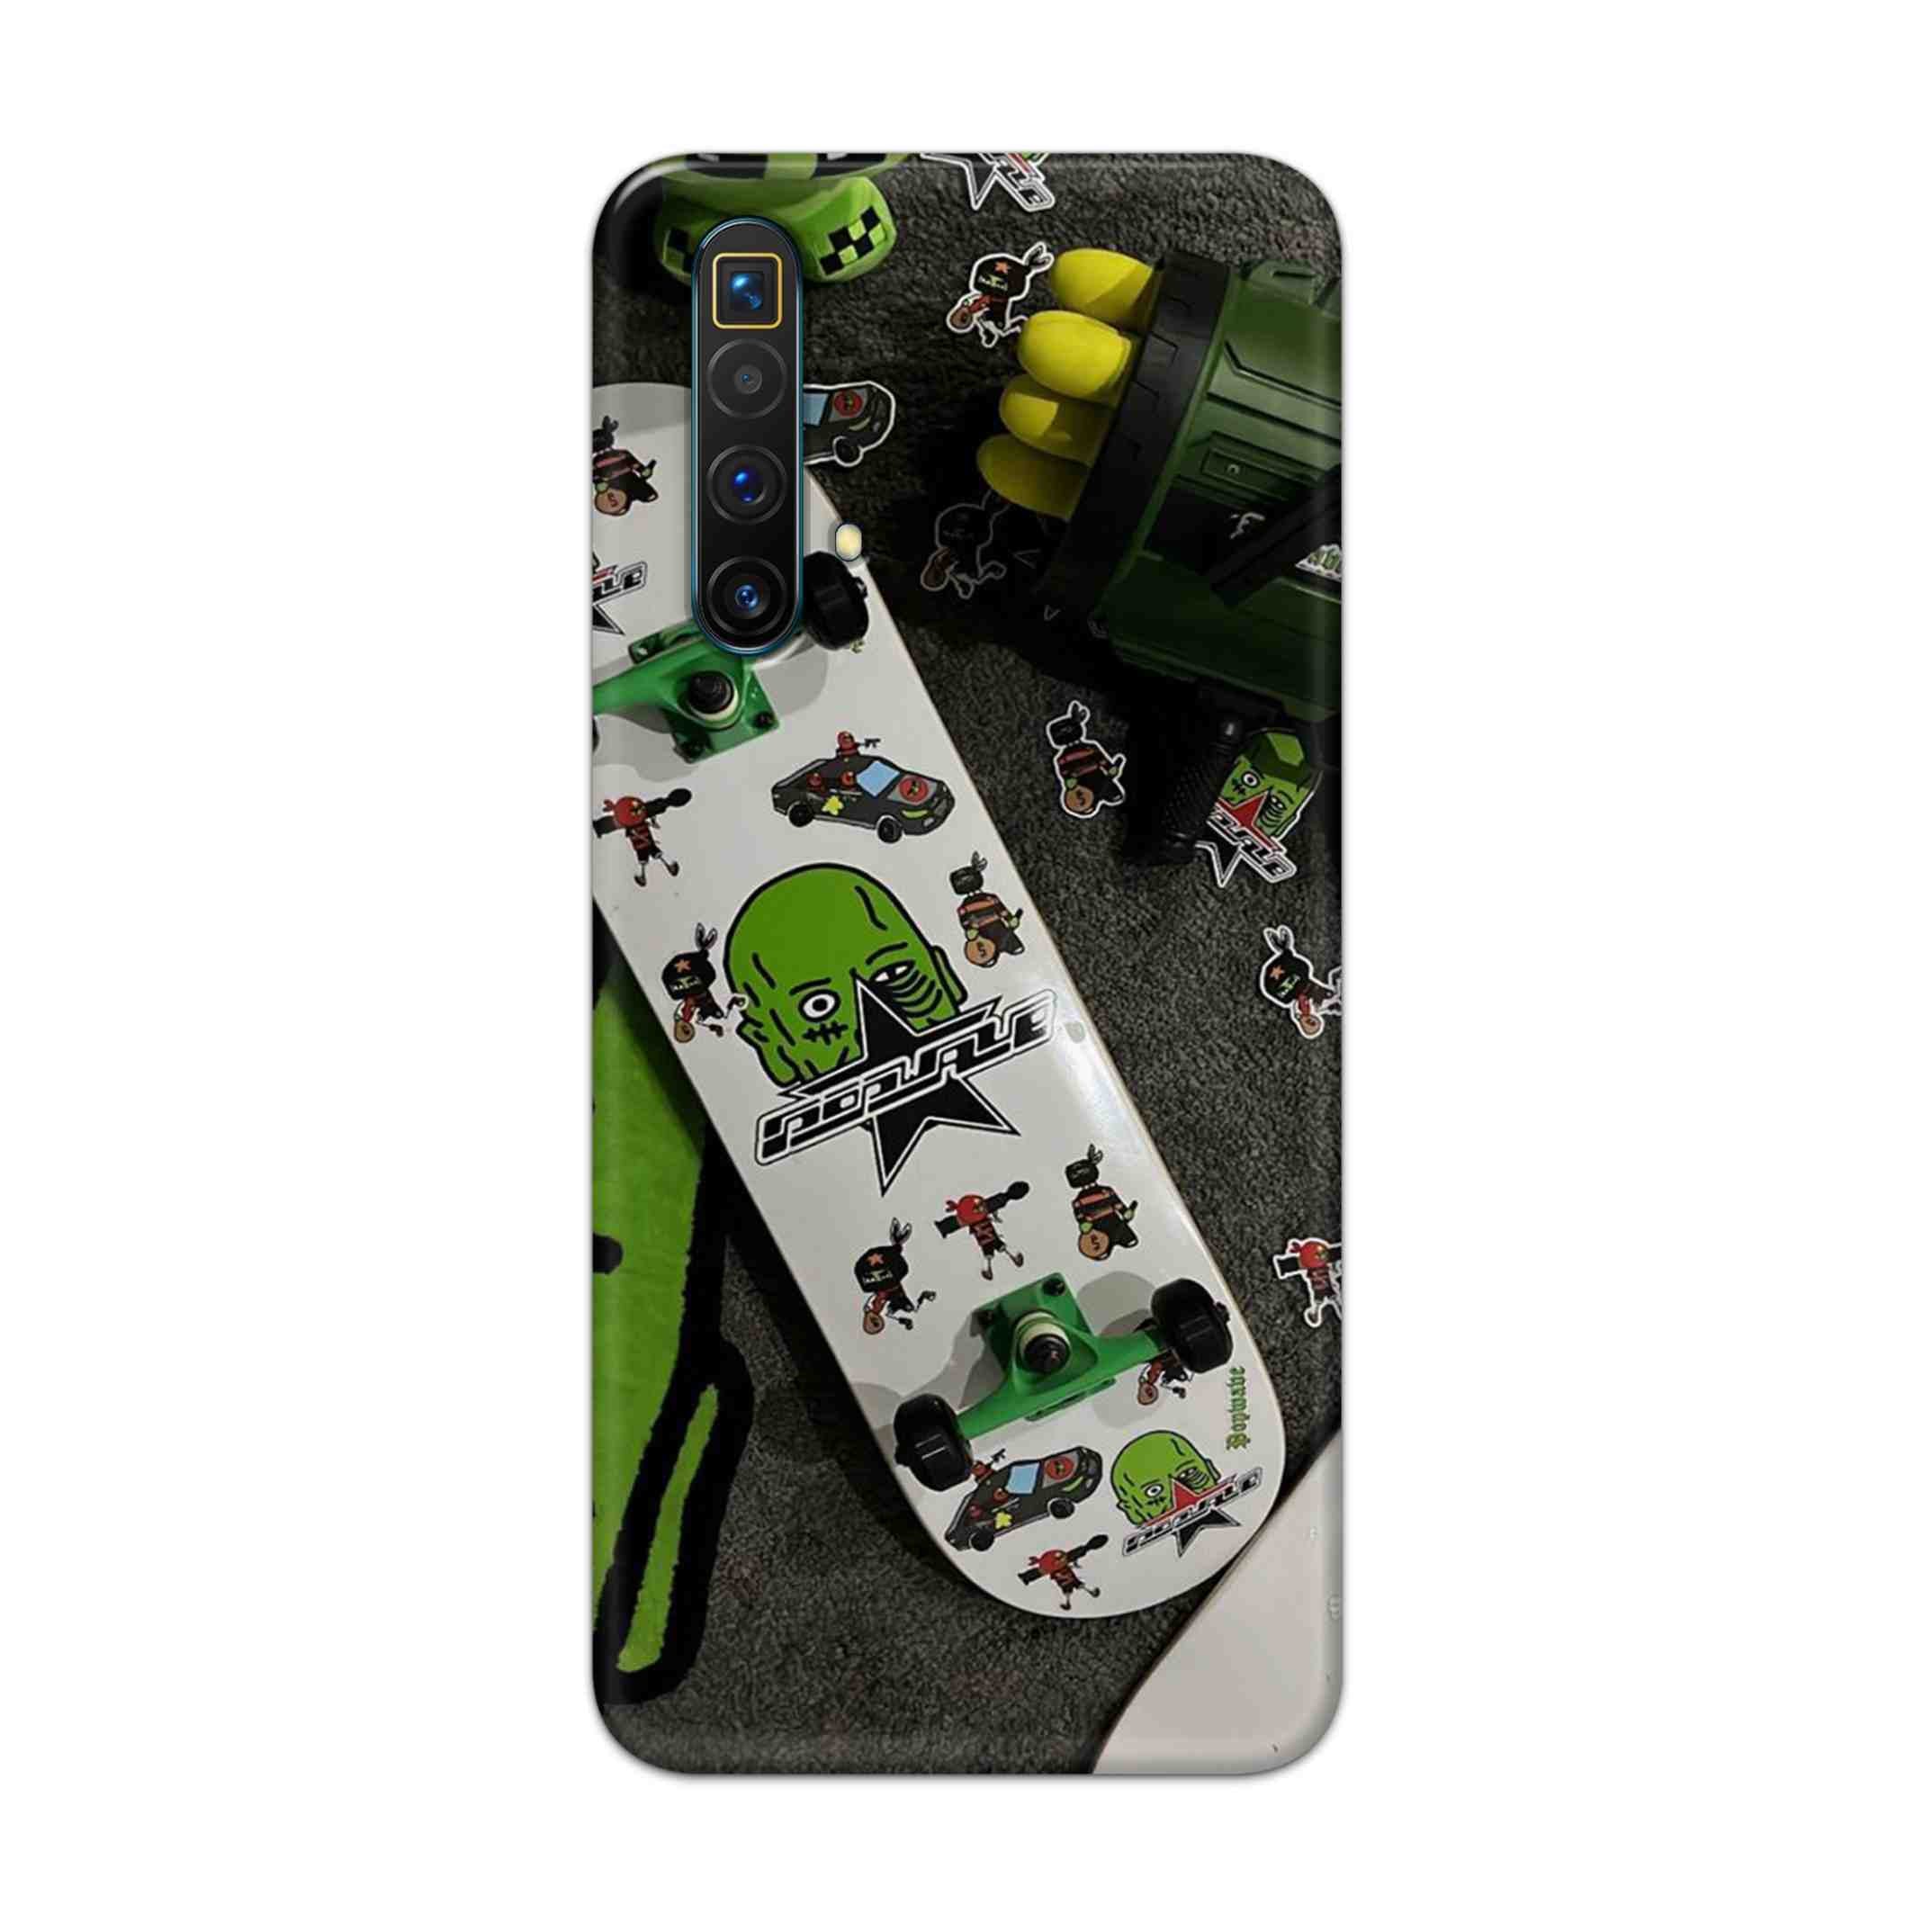 Buy Hulk Skateboard Hard Back Mobile Phone Case Cover For Realme X3 Superzoom Online